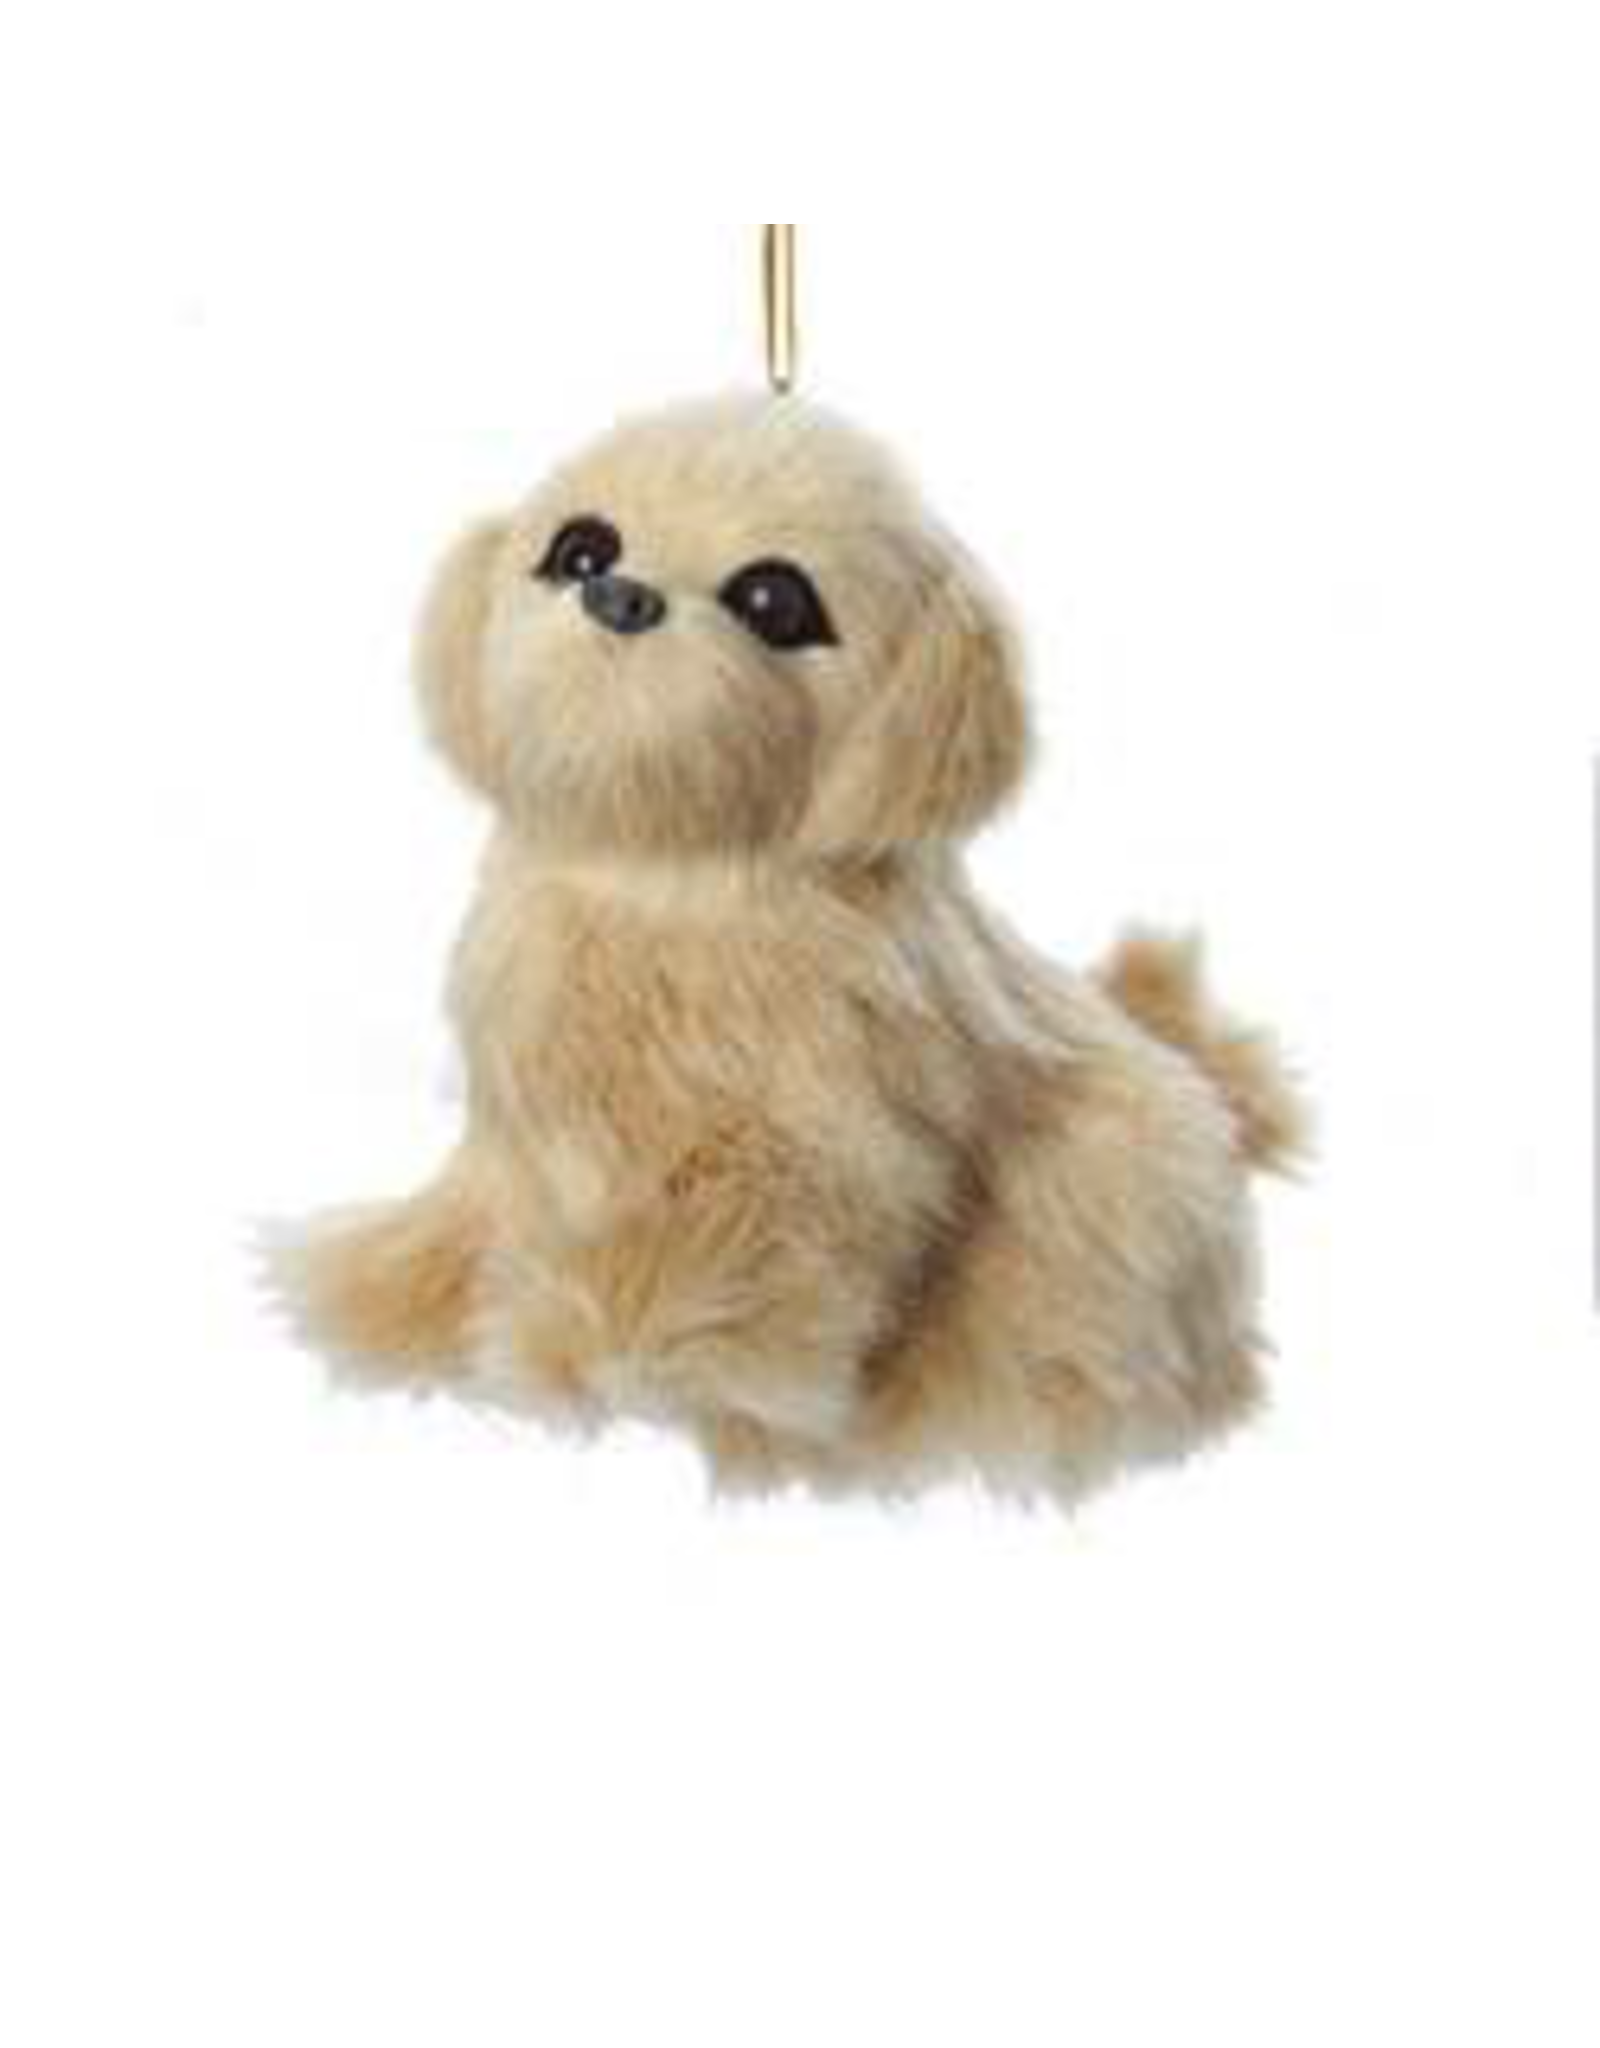 Kurt Adler Christmas Ornament Plush Dog Golden Retriever 3.5 inch